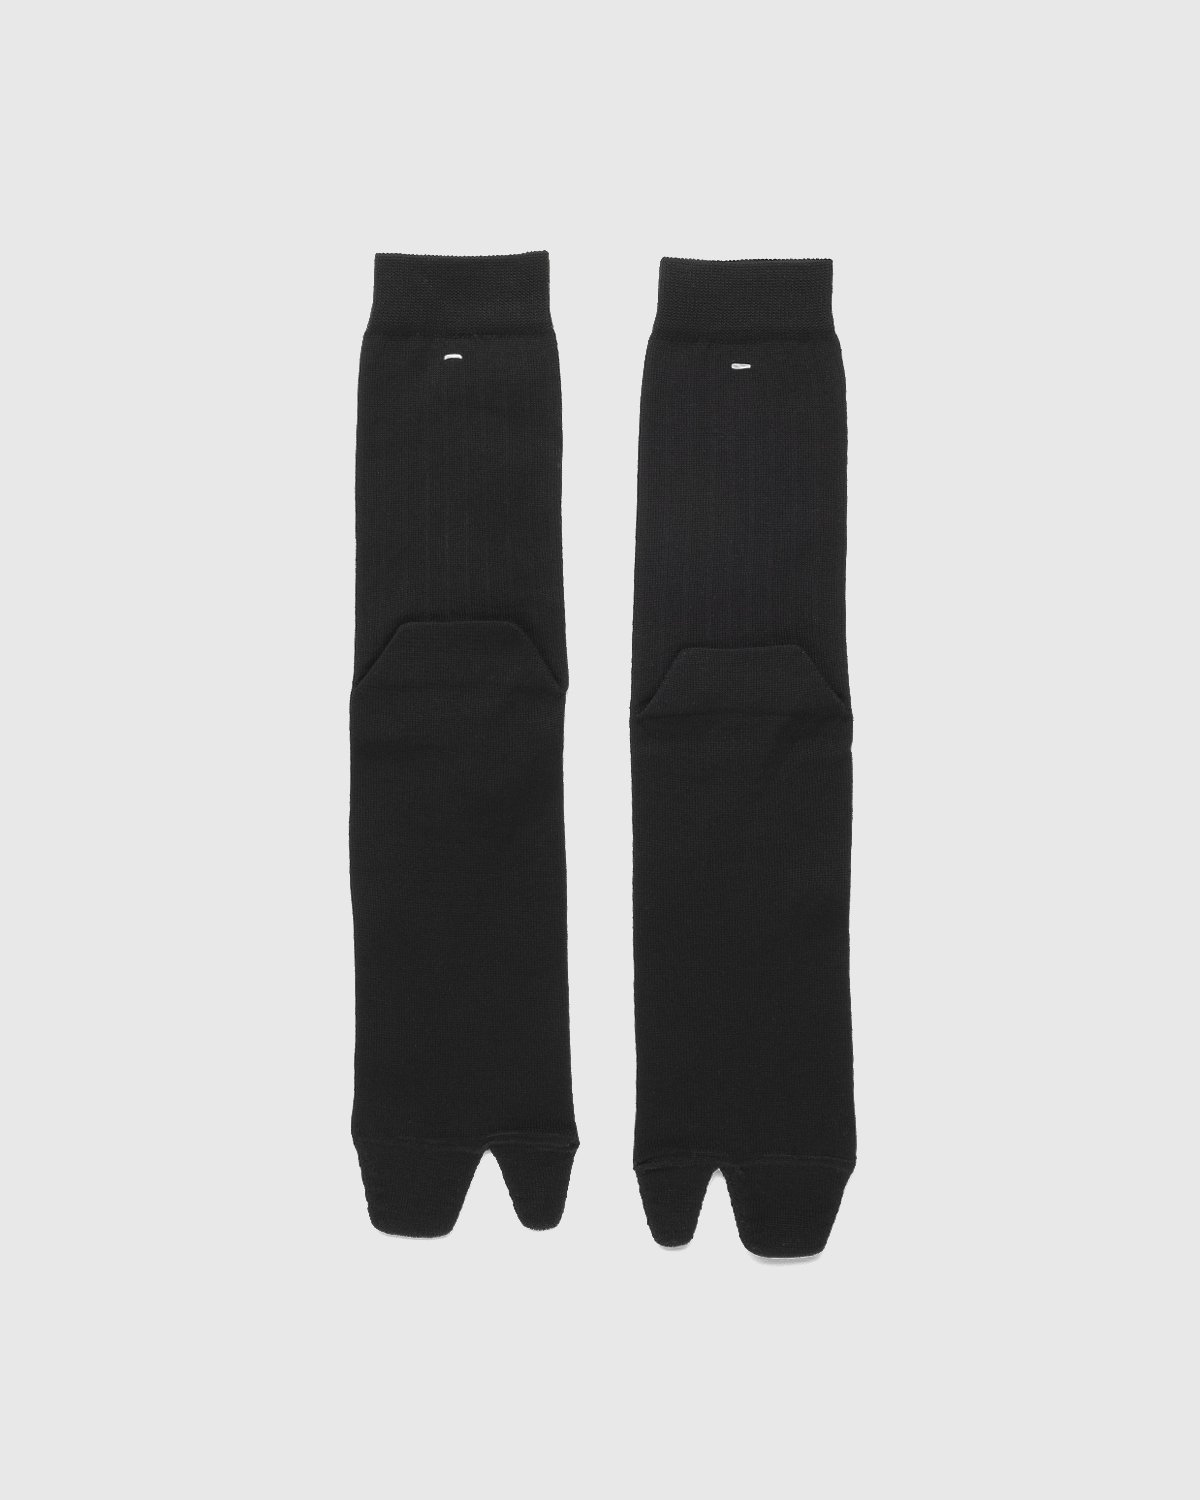 Maison Margiela - Tabi Socks Black - Accessories - Black - Image 1